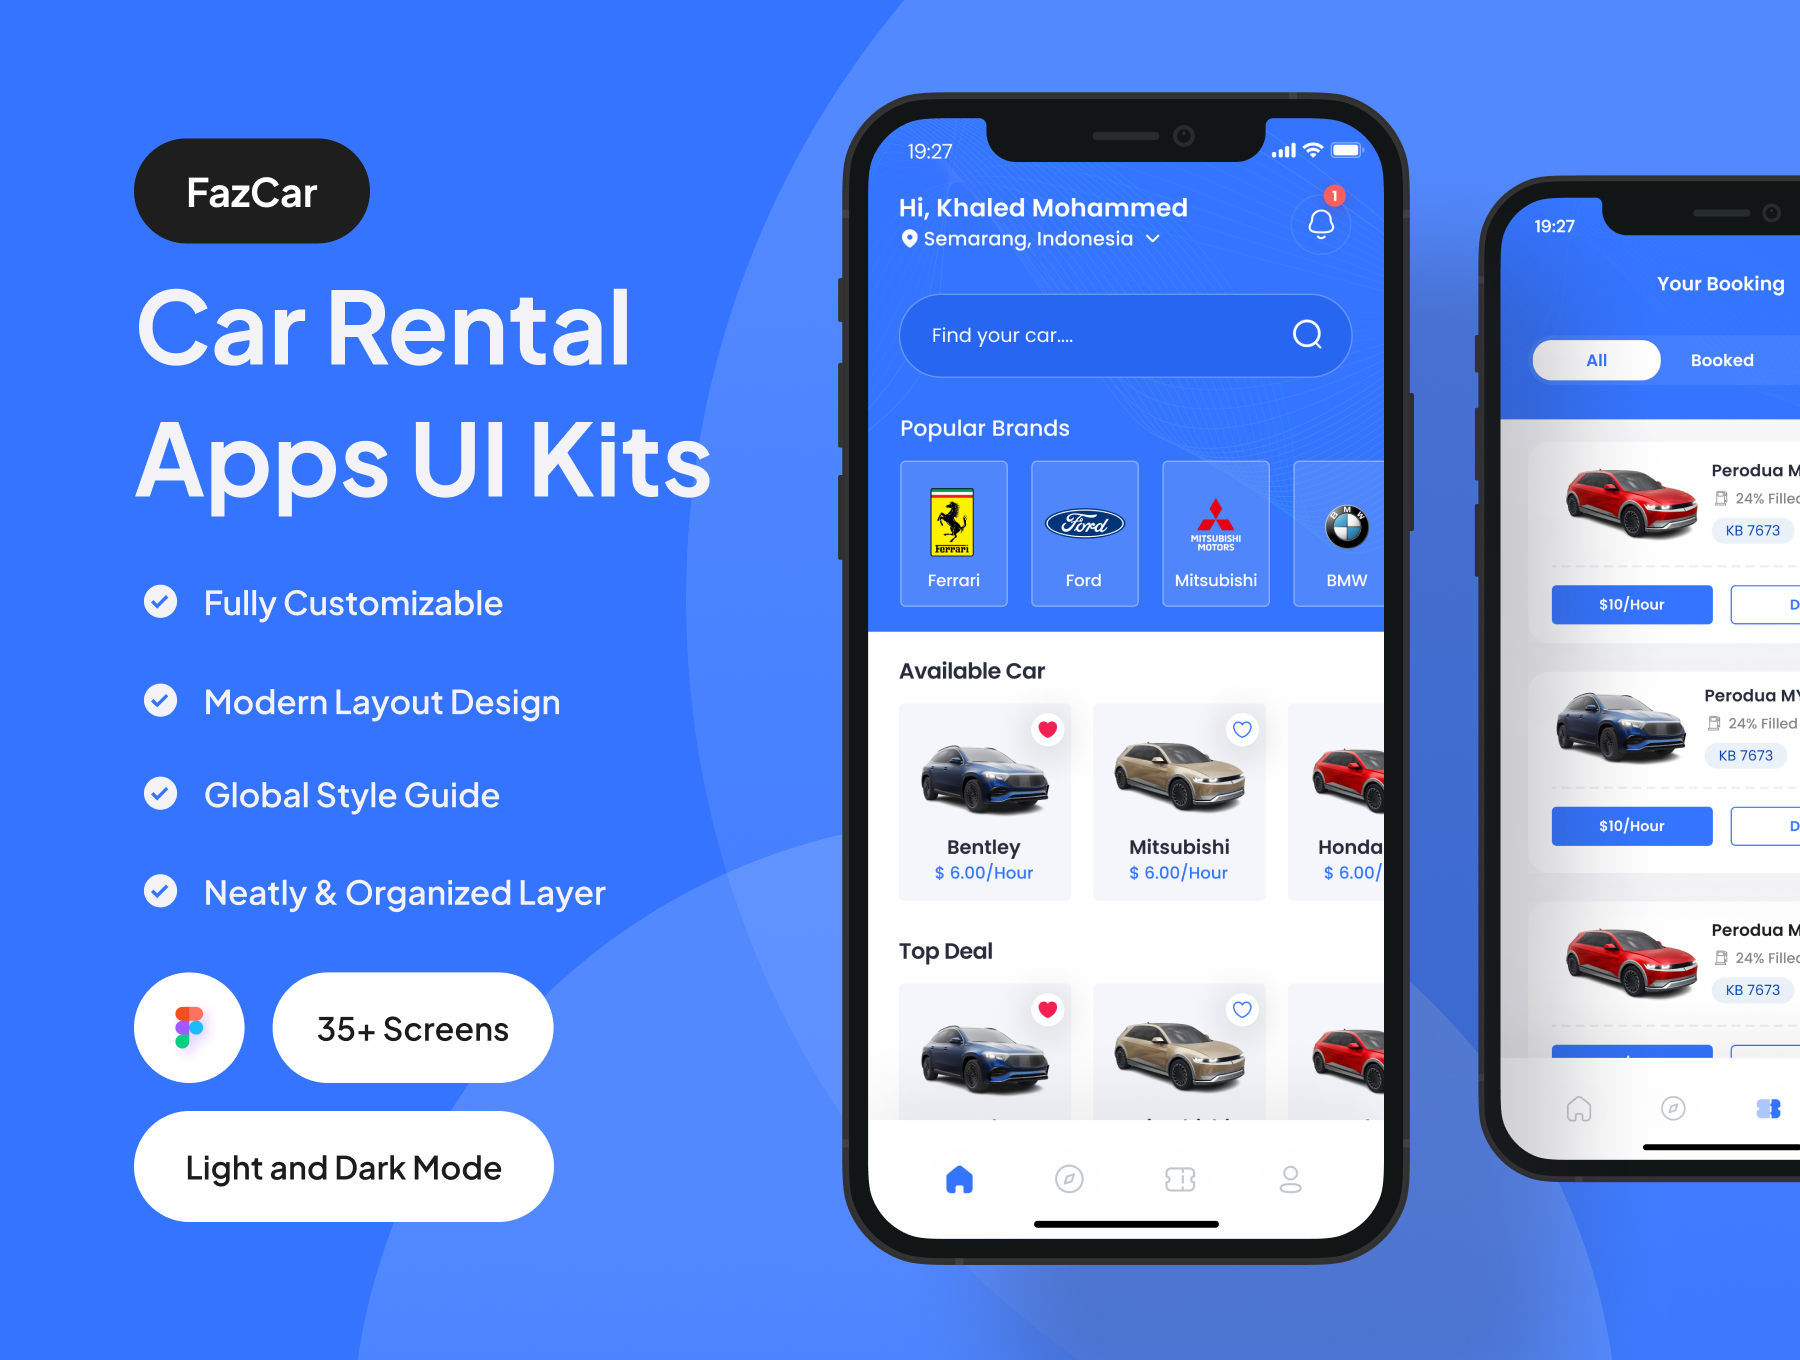 汽车租赁应用程序 UI 套件35屏 FazCar - Car Rental App UI Kit .figma-UI/UX、ui套件、主页、介绍、应用、网购、详情-到位啦UI